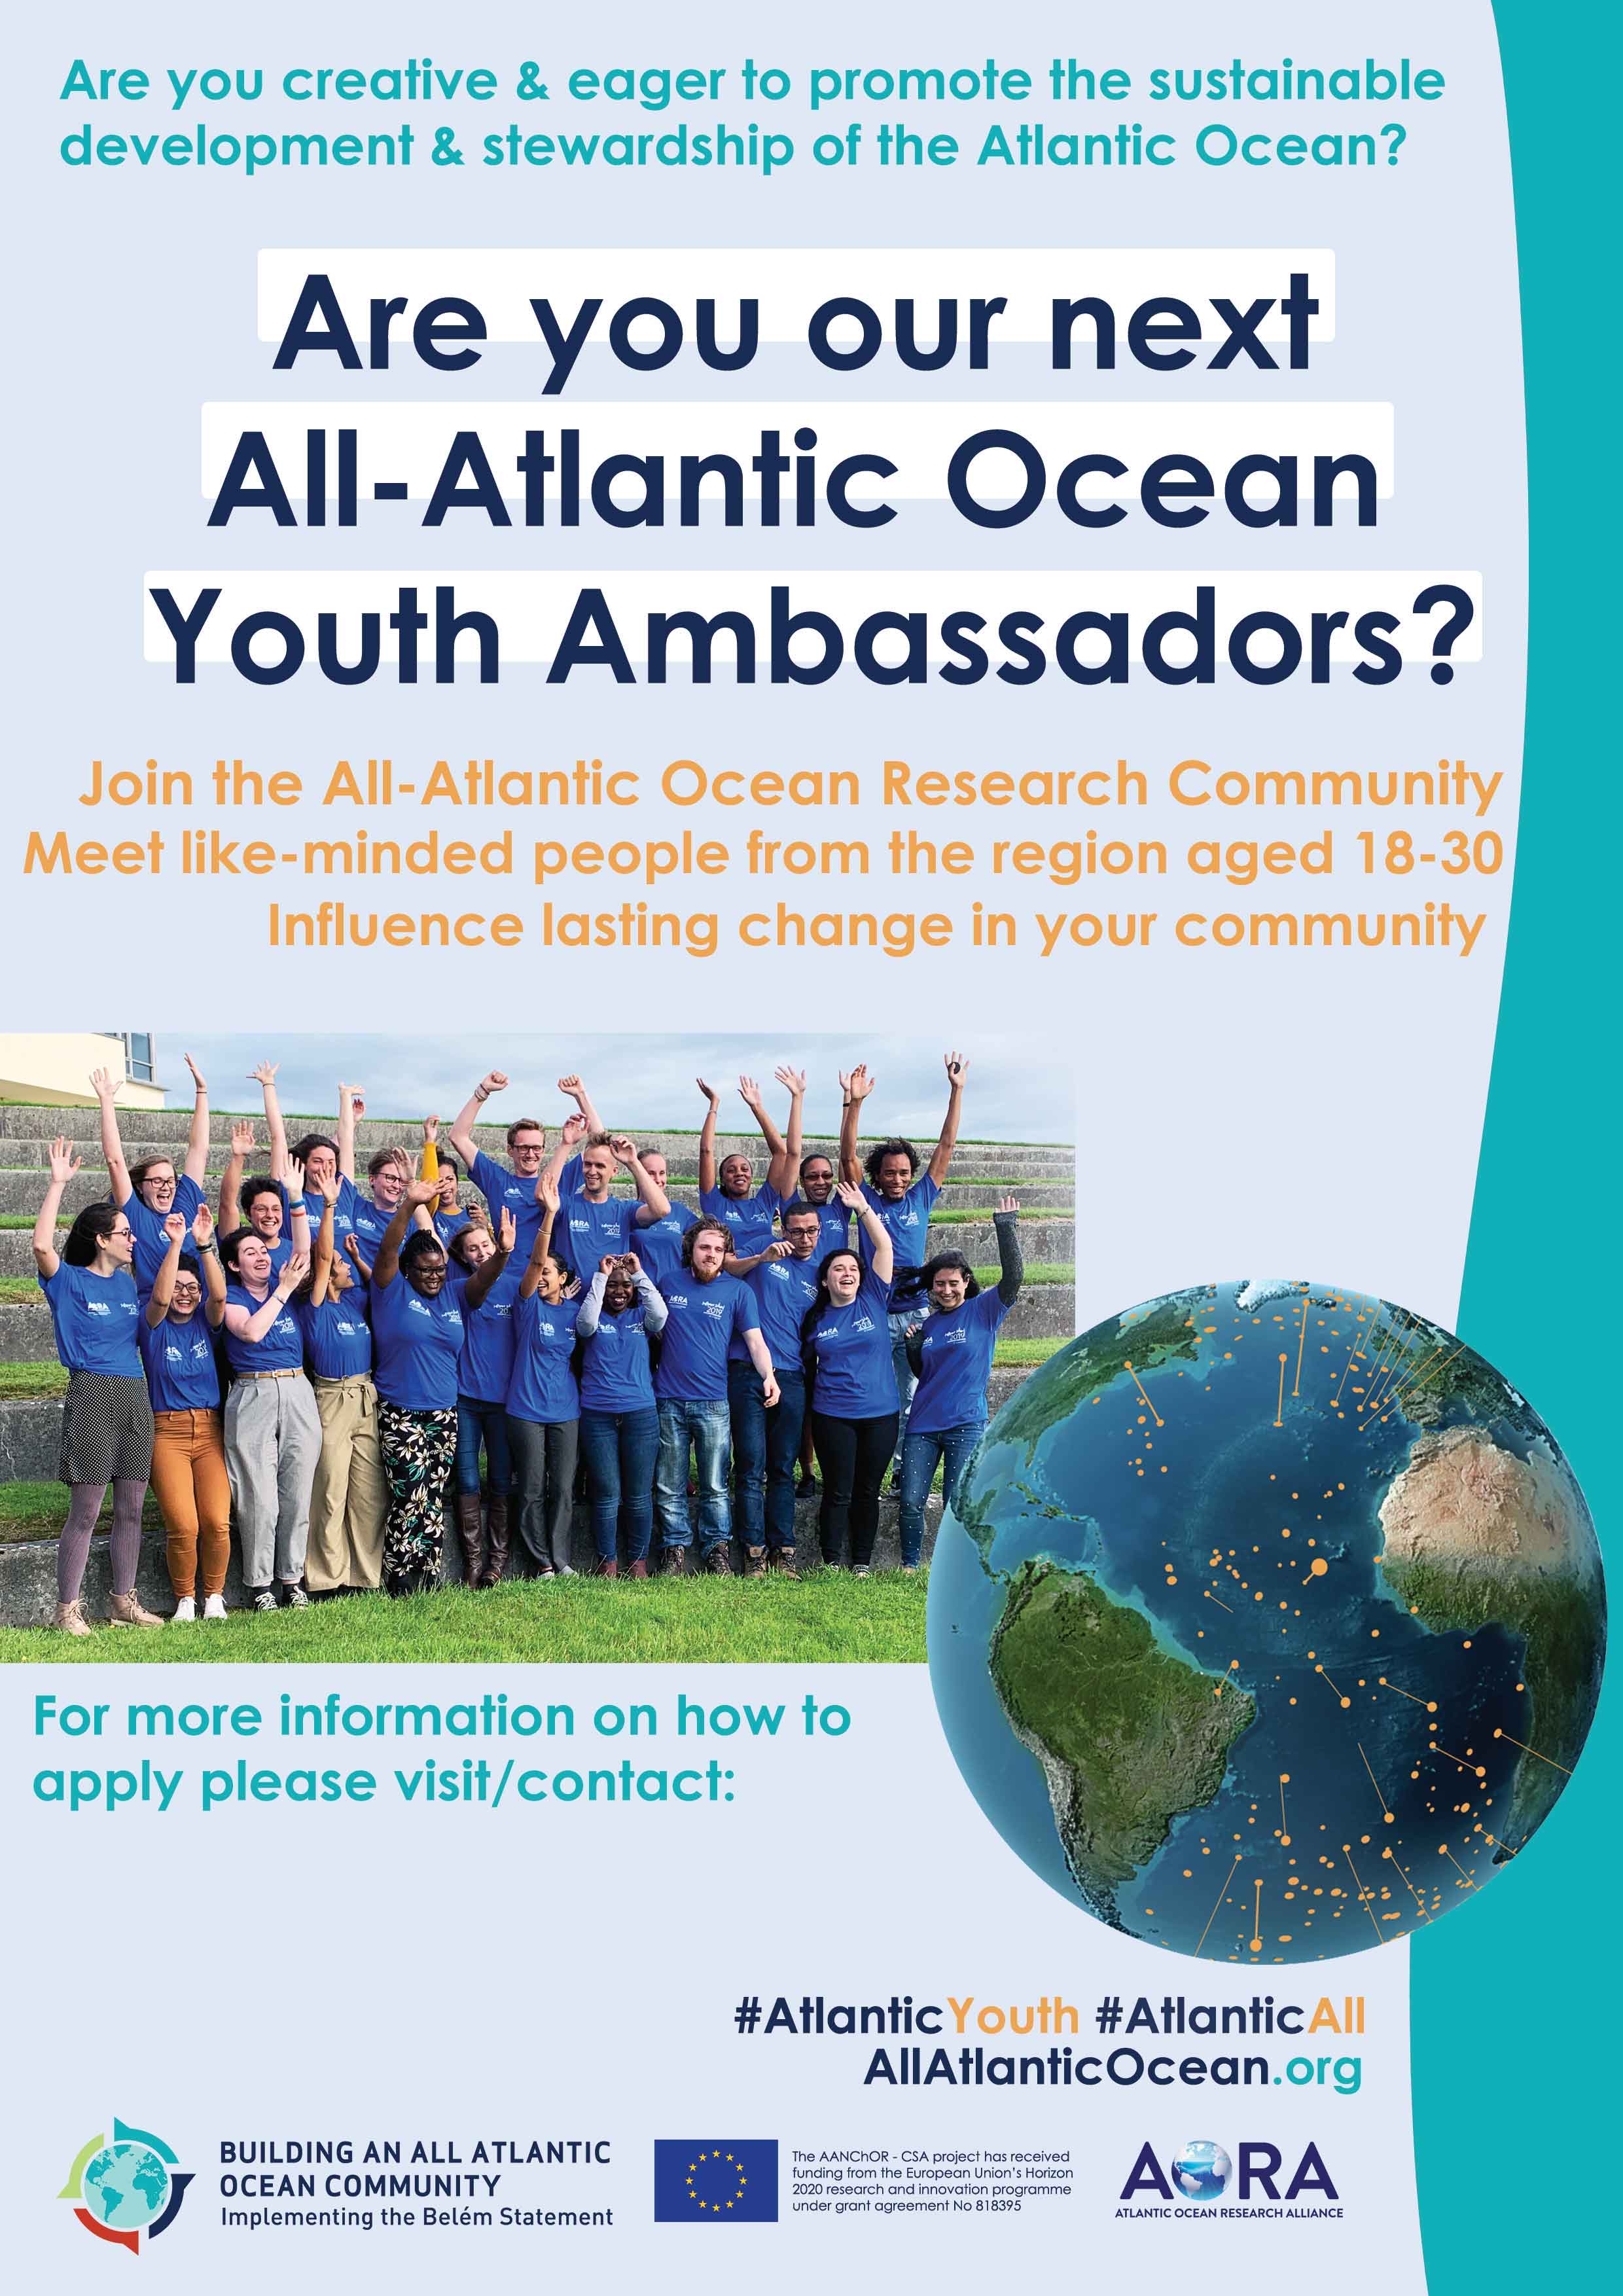 Blatt mit Kurz-Infos für die Suche nach den All Atlantic Youth Ambassadors